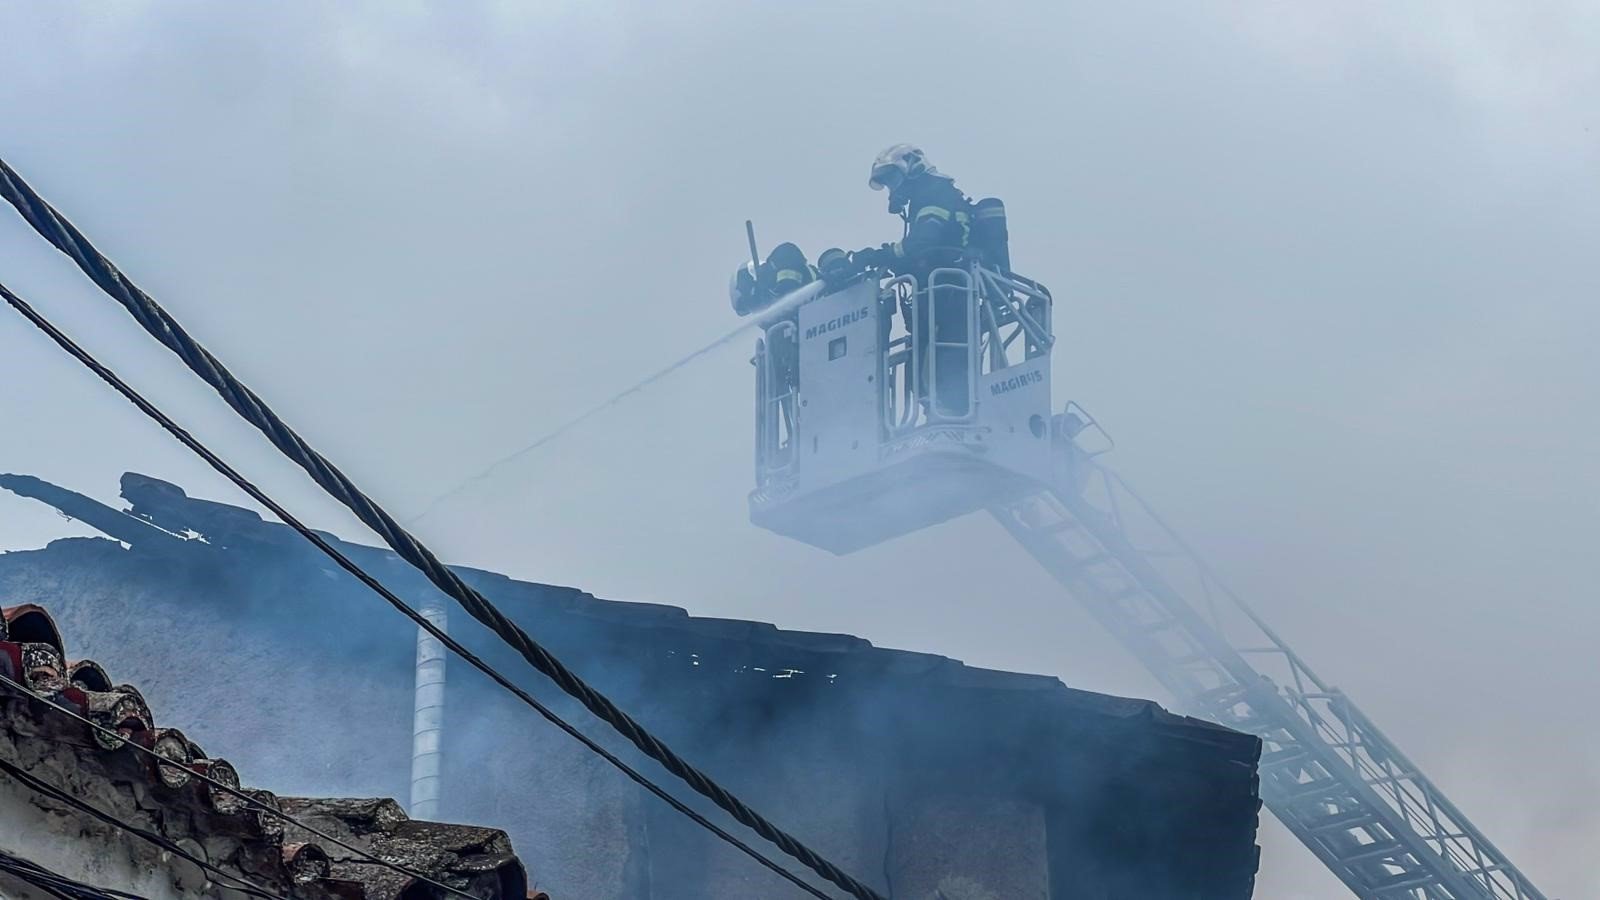 Bomberos trabajan para extinguir un incendio en tres viviendas de San Martín de Valdeiglesias sin heridos